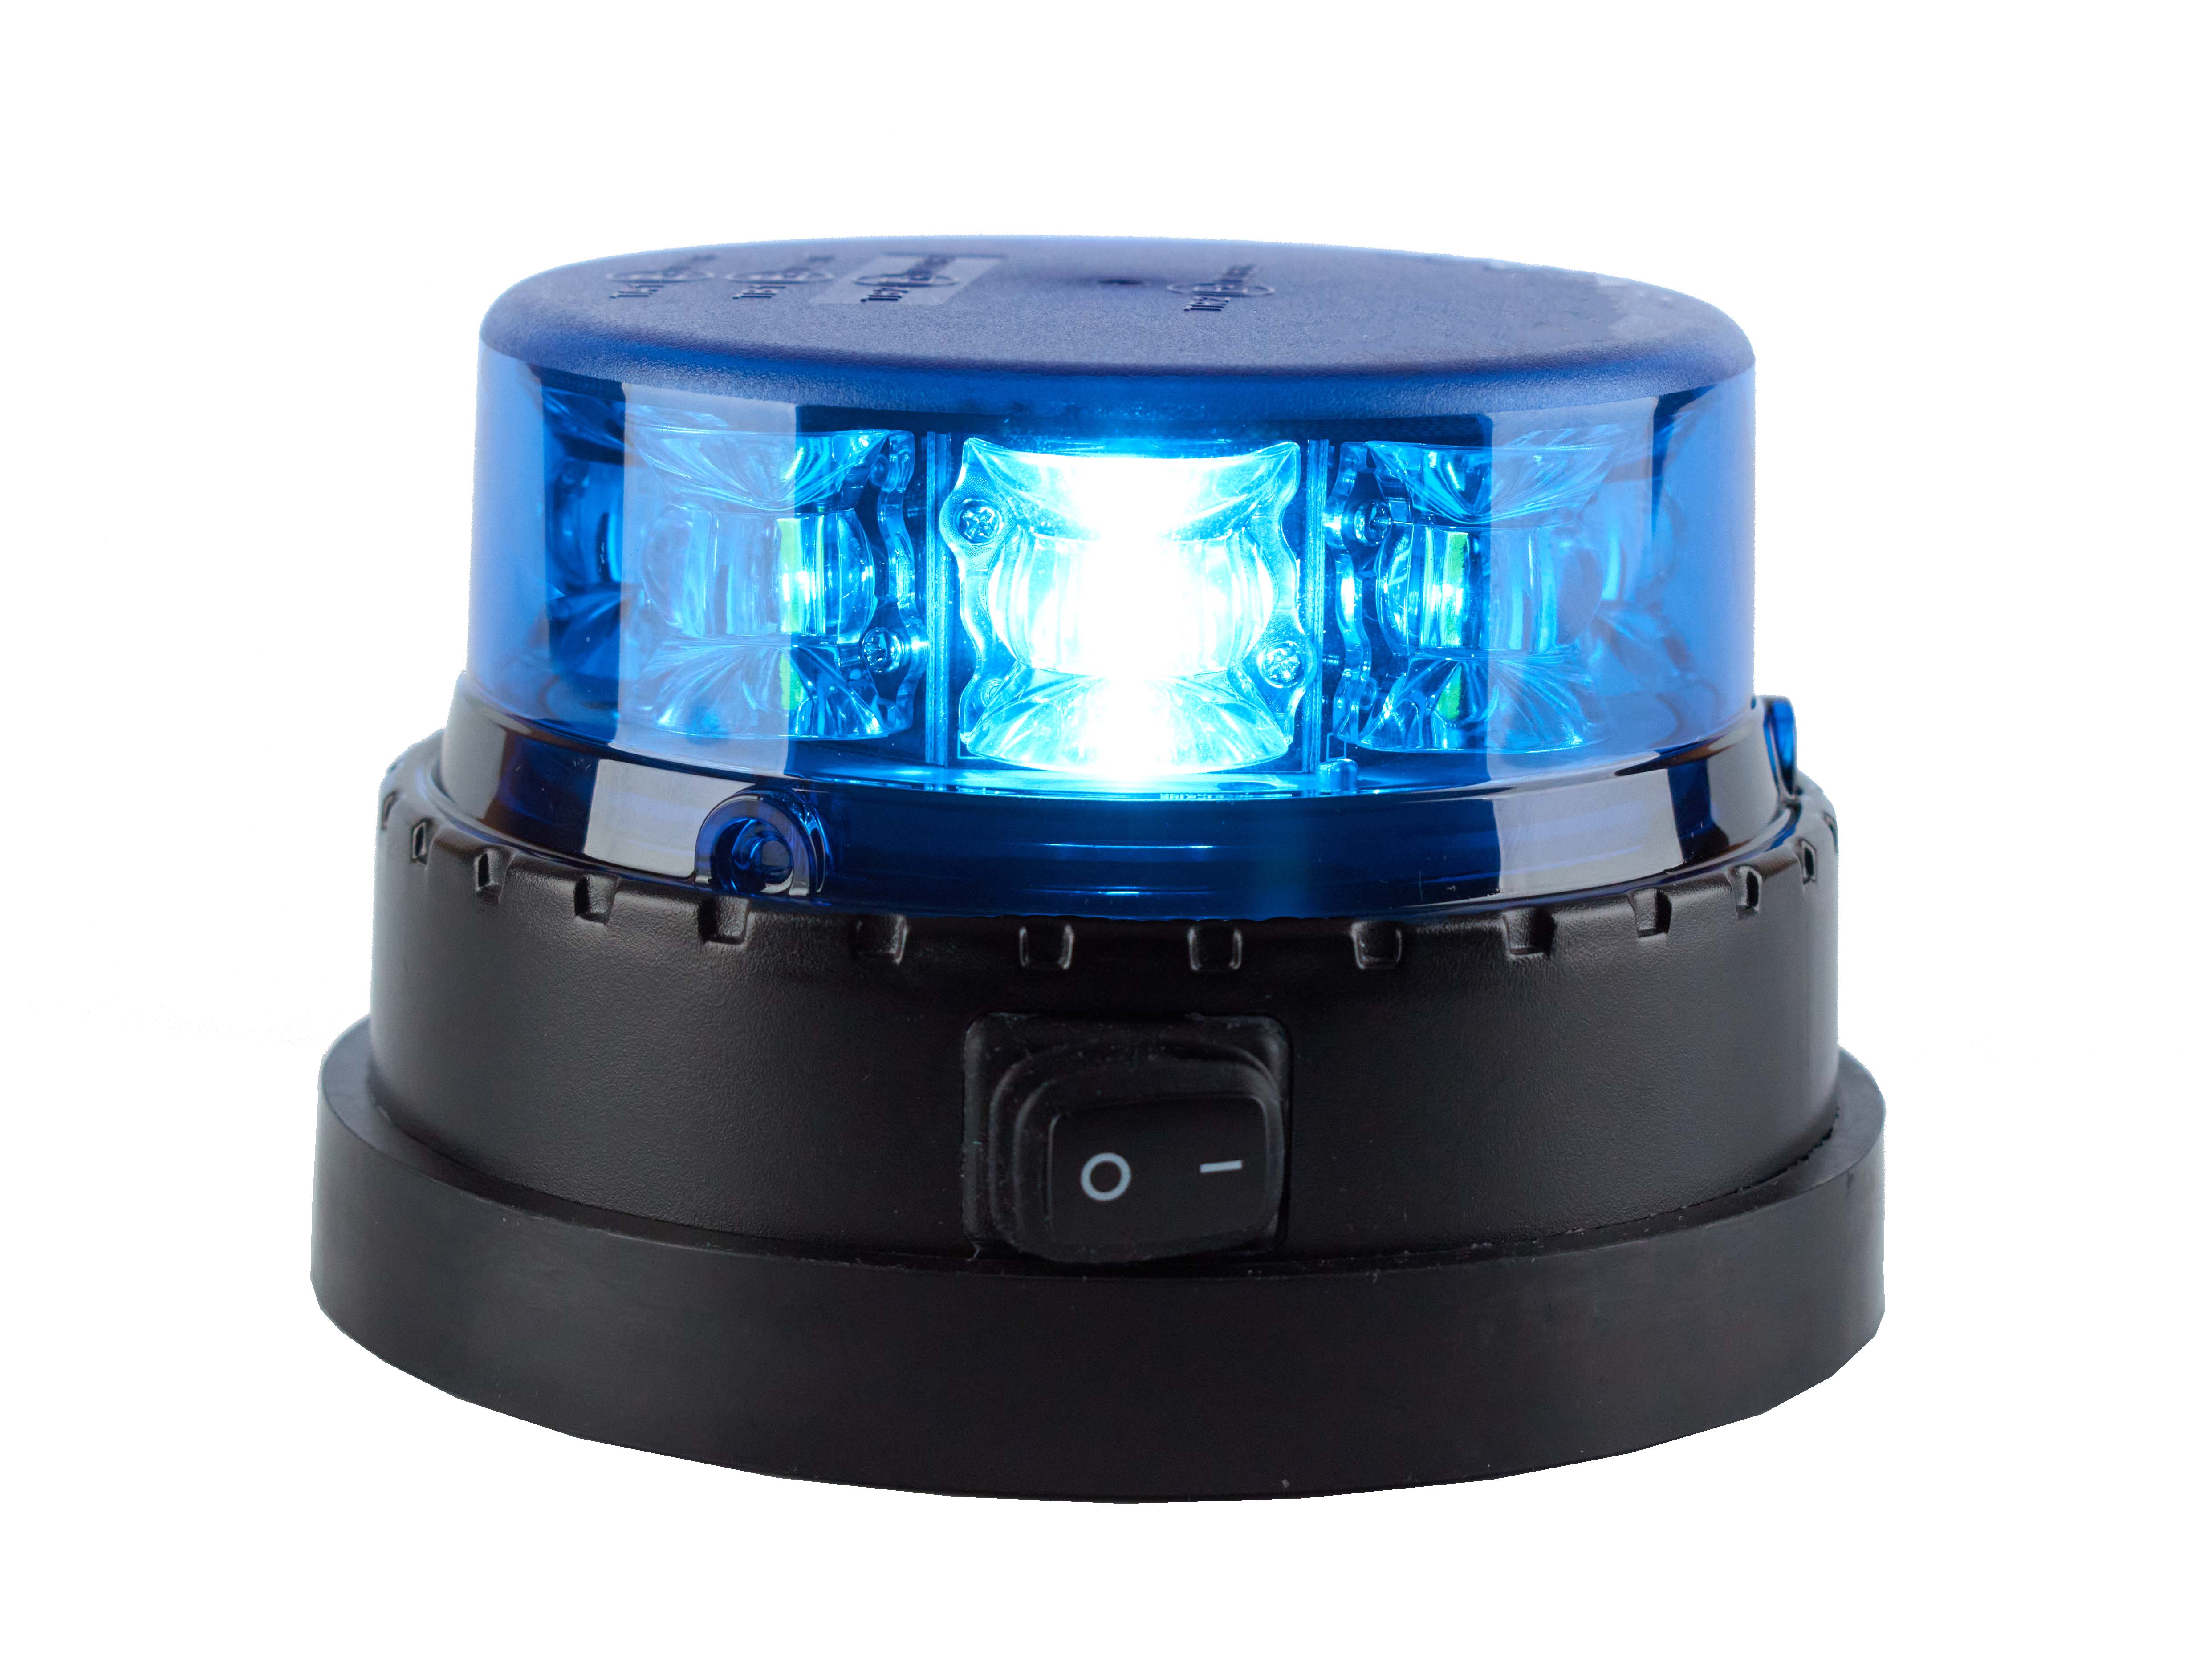 GYROPHARE DE POLICE (Lumière bleue et son)